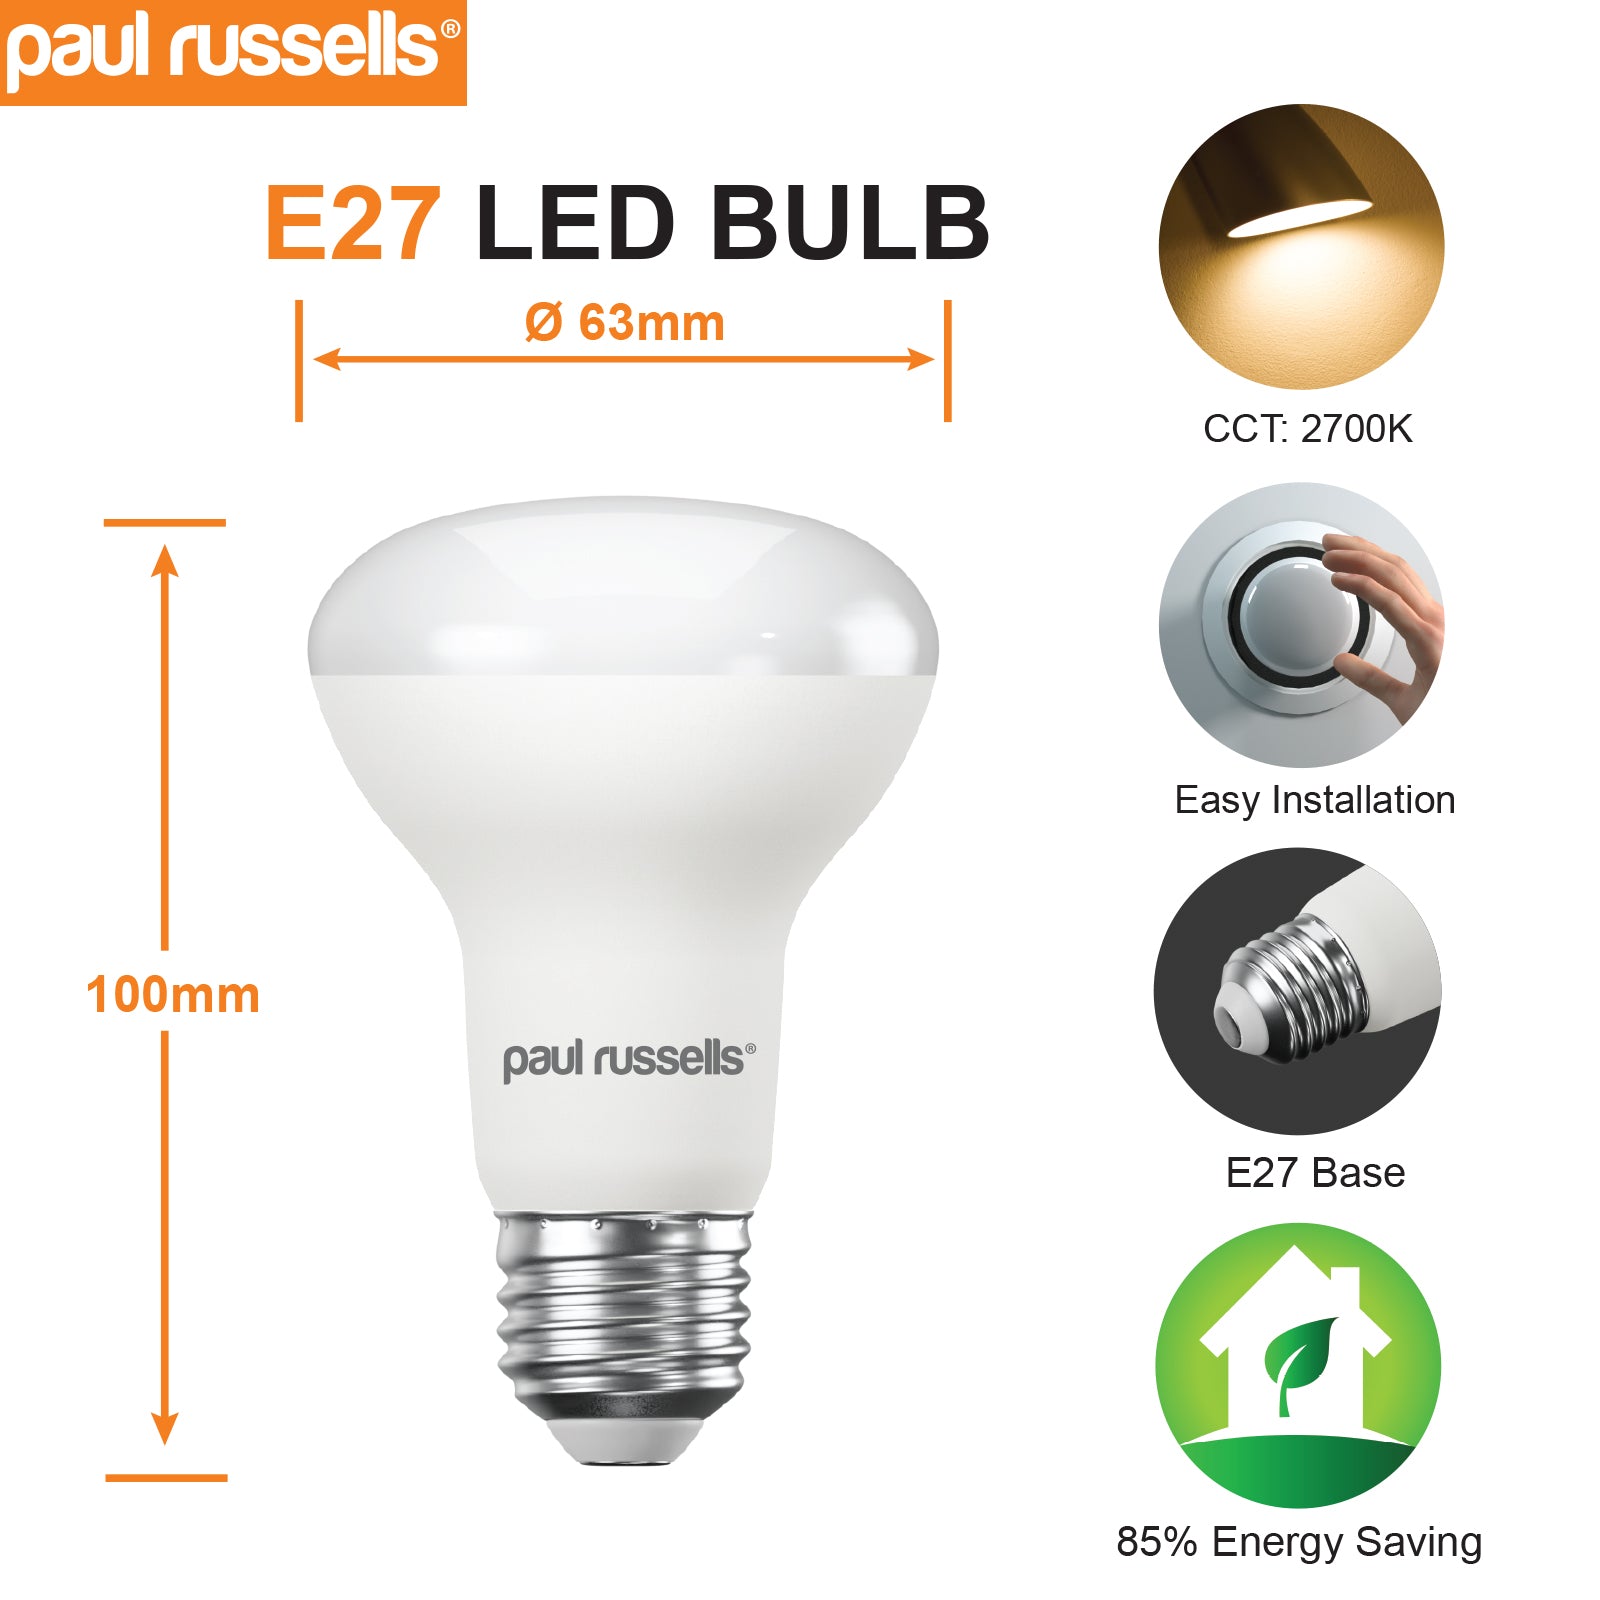 LED R63 8.5W (60w), ES/E27, 806 Lumens, Warm White(2700K), 240V